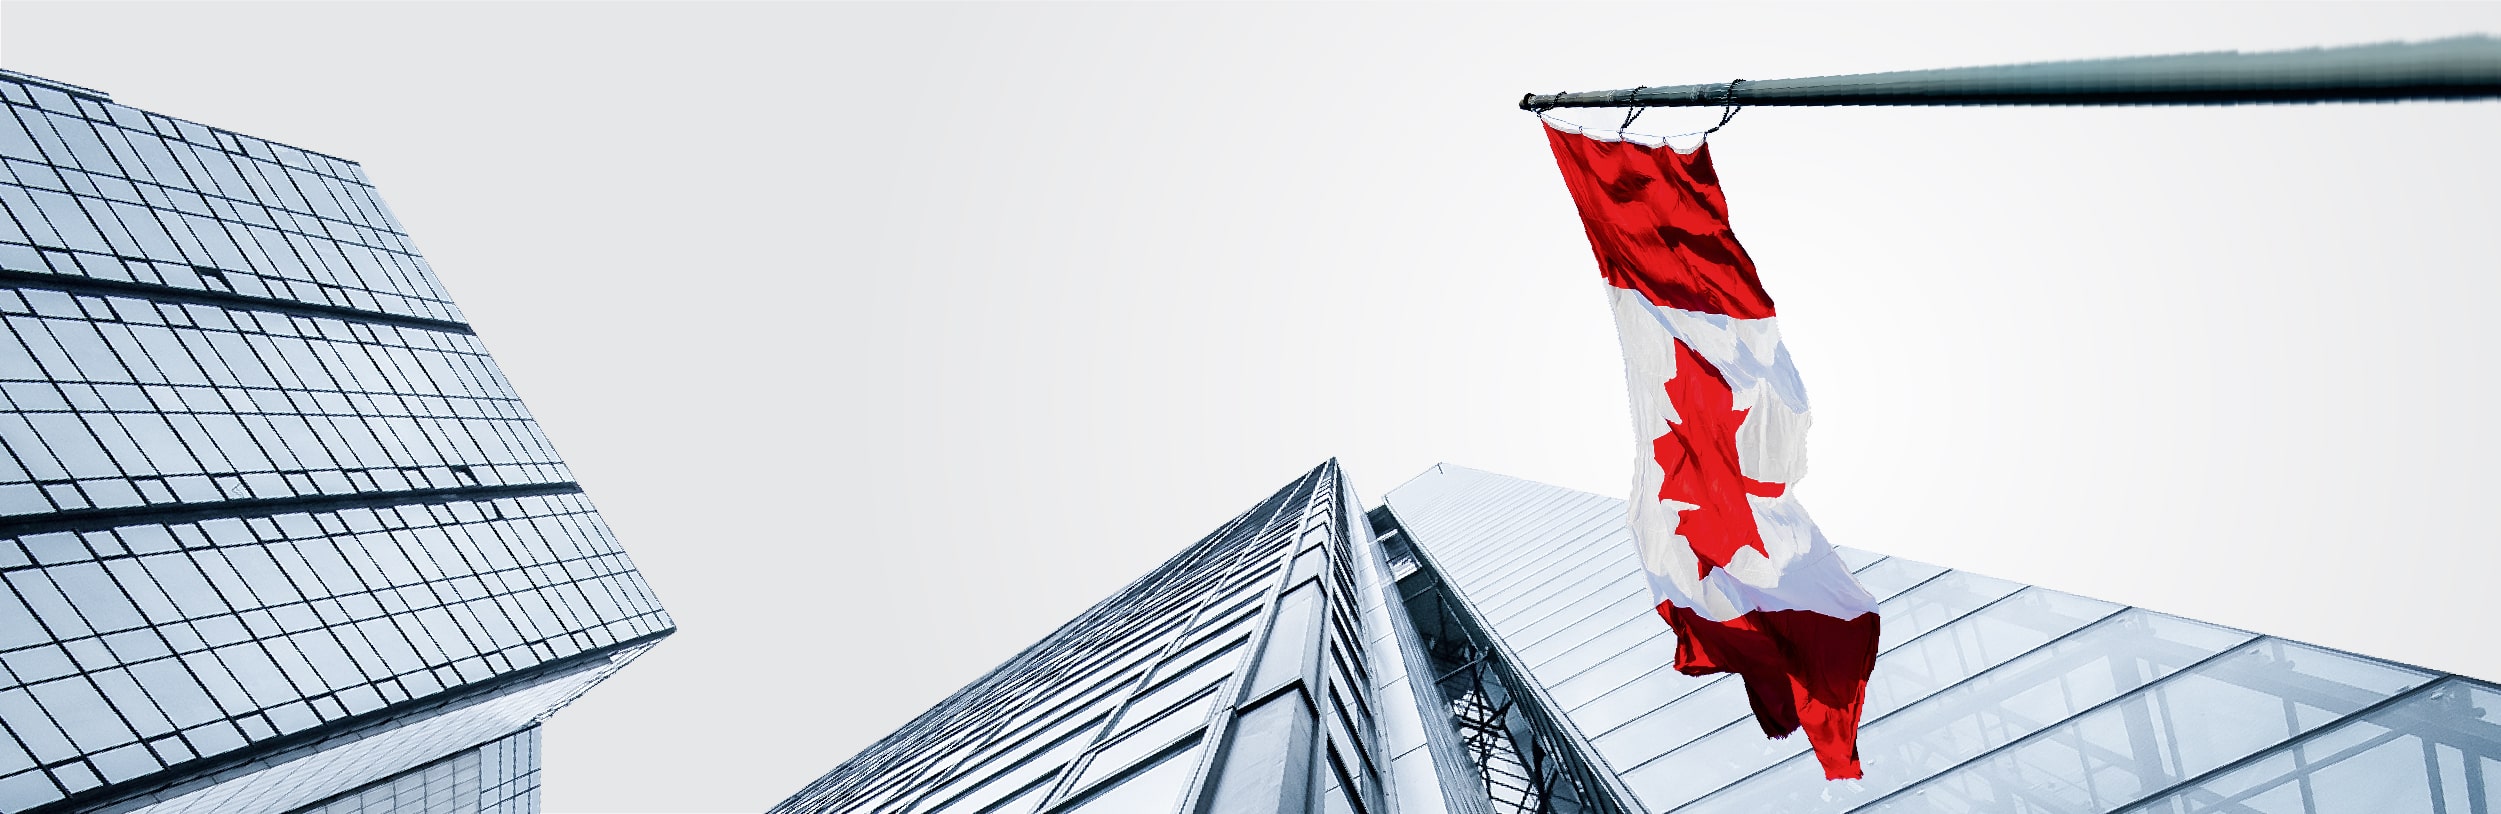 Định cư Canada diện doanh nhân tỉnh bang PEI - Điểm chọn lọc hồ sơ tháng 11 giảm còn 62 - IMM Group